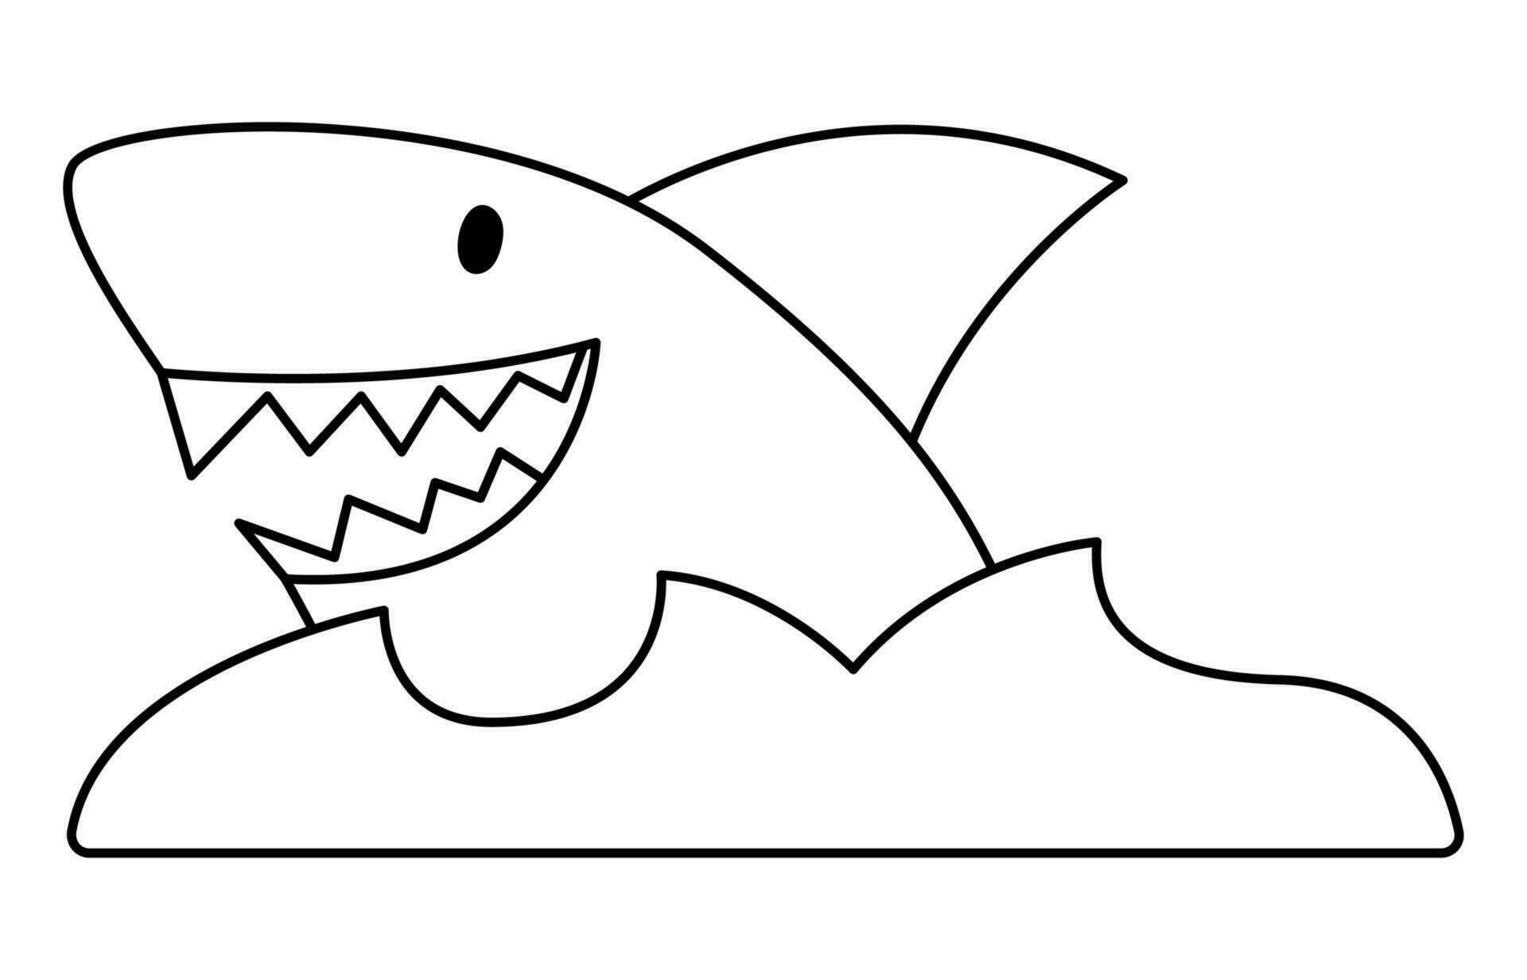 Vektor schwarz und Weiß Hai und Wasser Symbol. süß Meer Tier Illustration. Schatz Insel Jäger Bild. komisch Pirat Party Linie Element oder Färbung Seite zum Kinder. unheimlich Fisch Bild